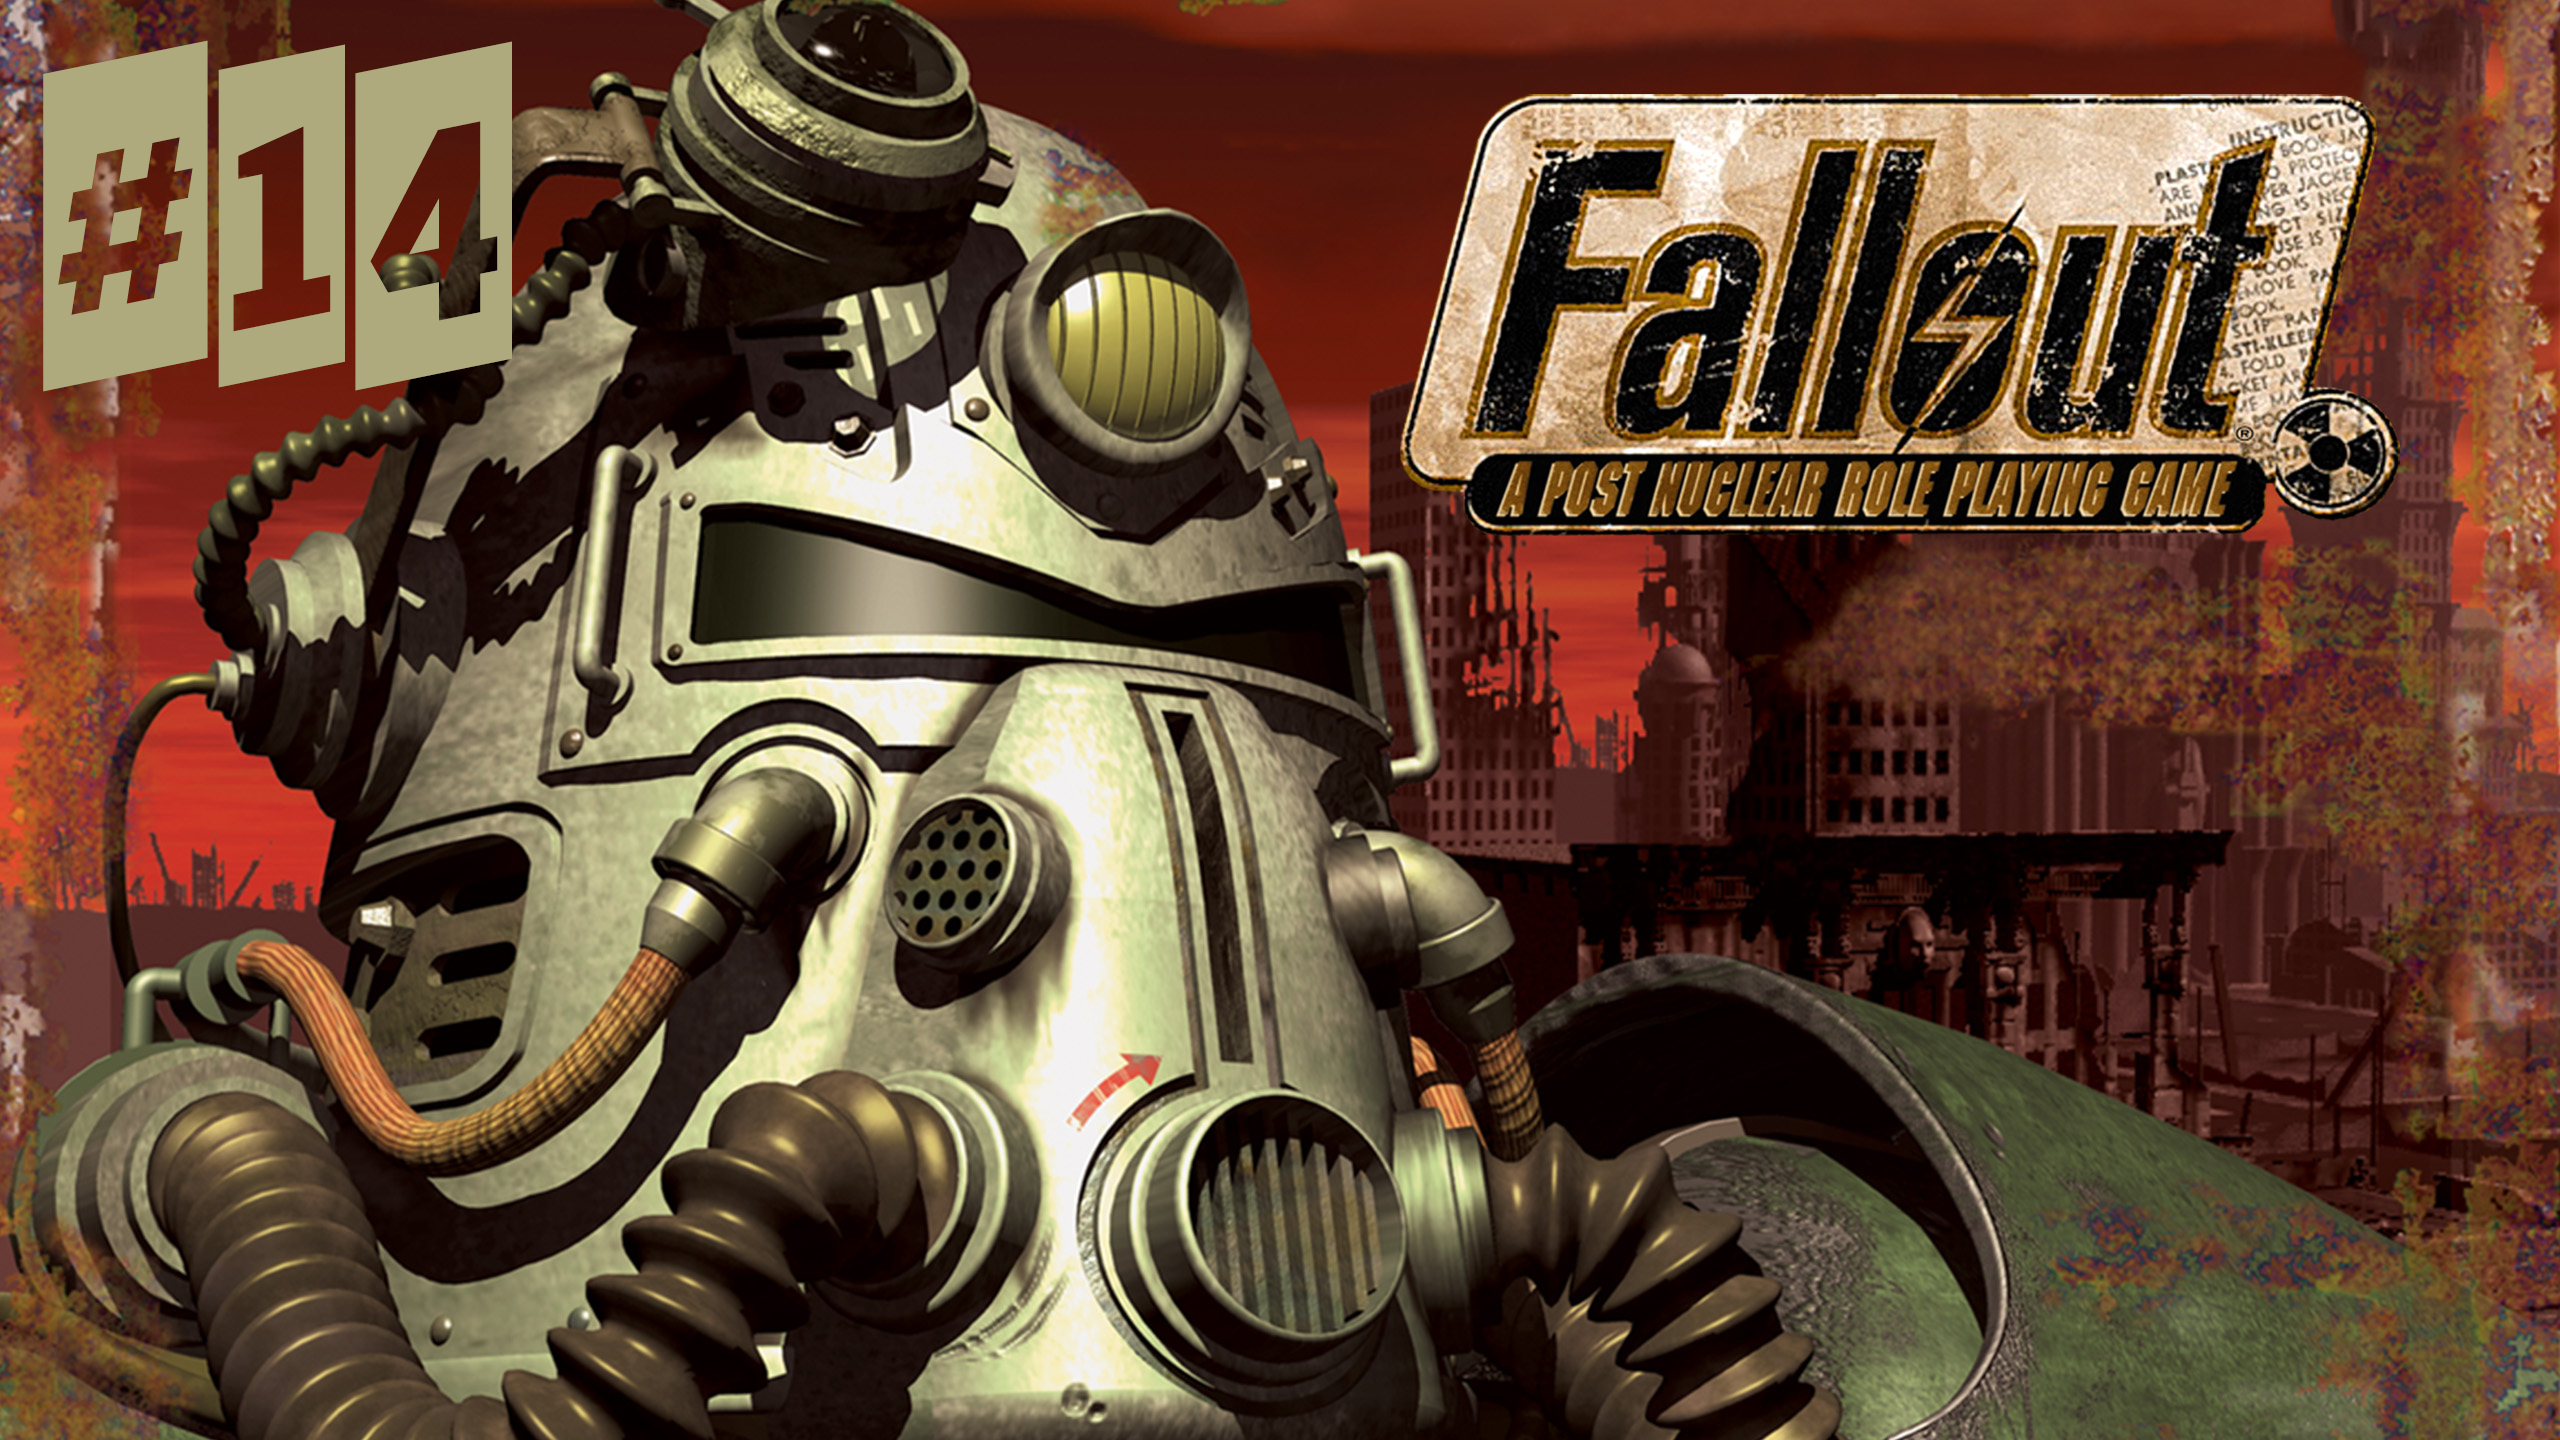 Почему так душно? Откройте окно! Fallout 1 #14 Первое прохождение.